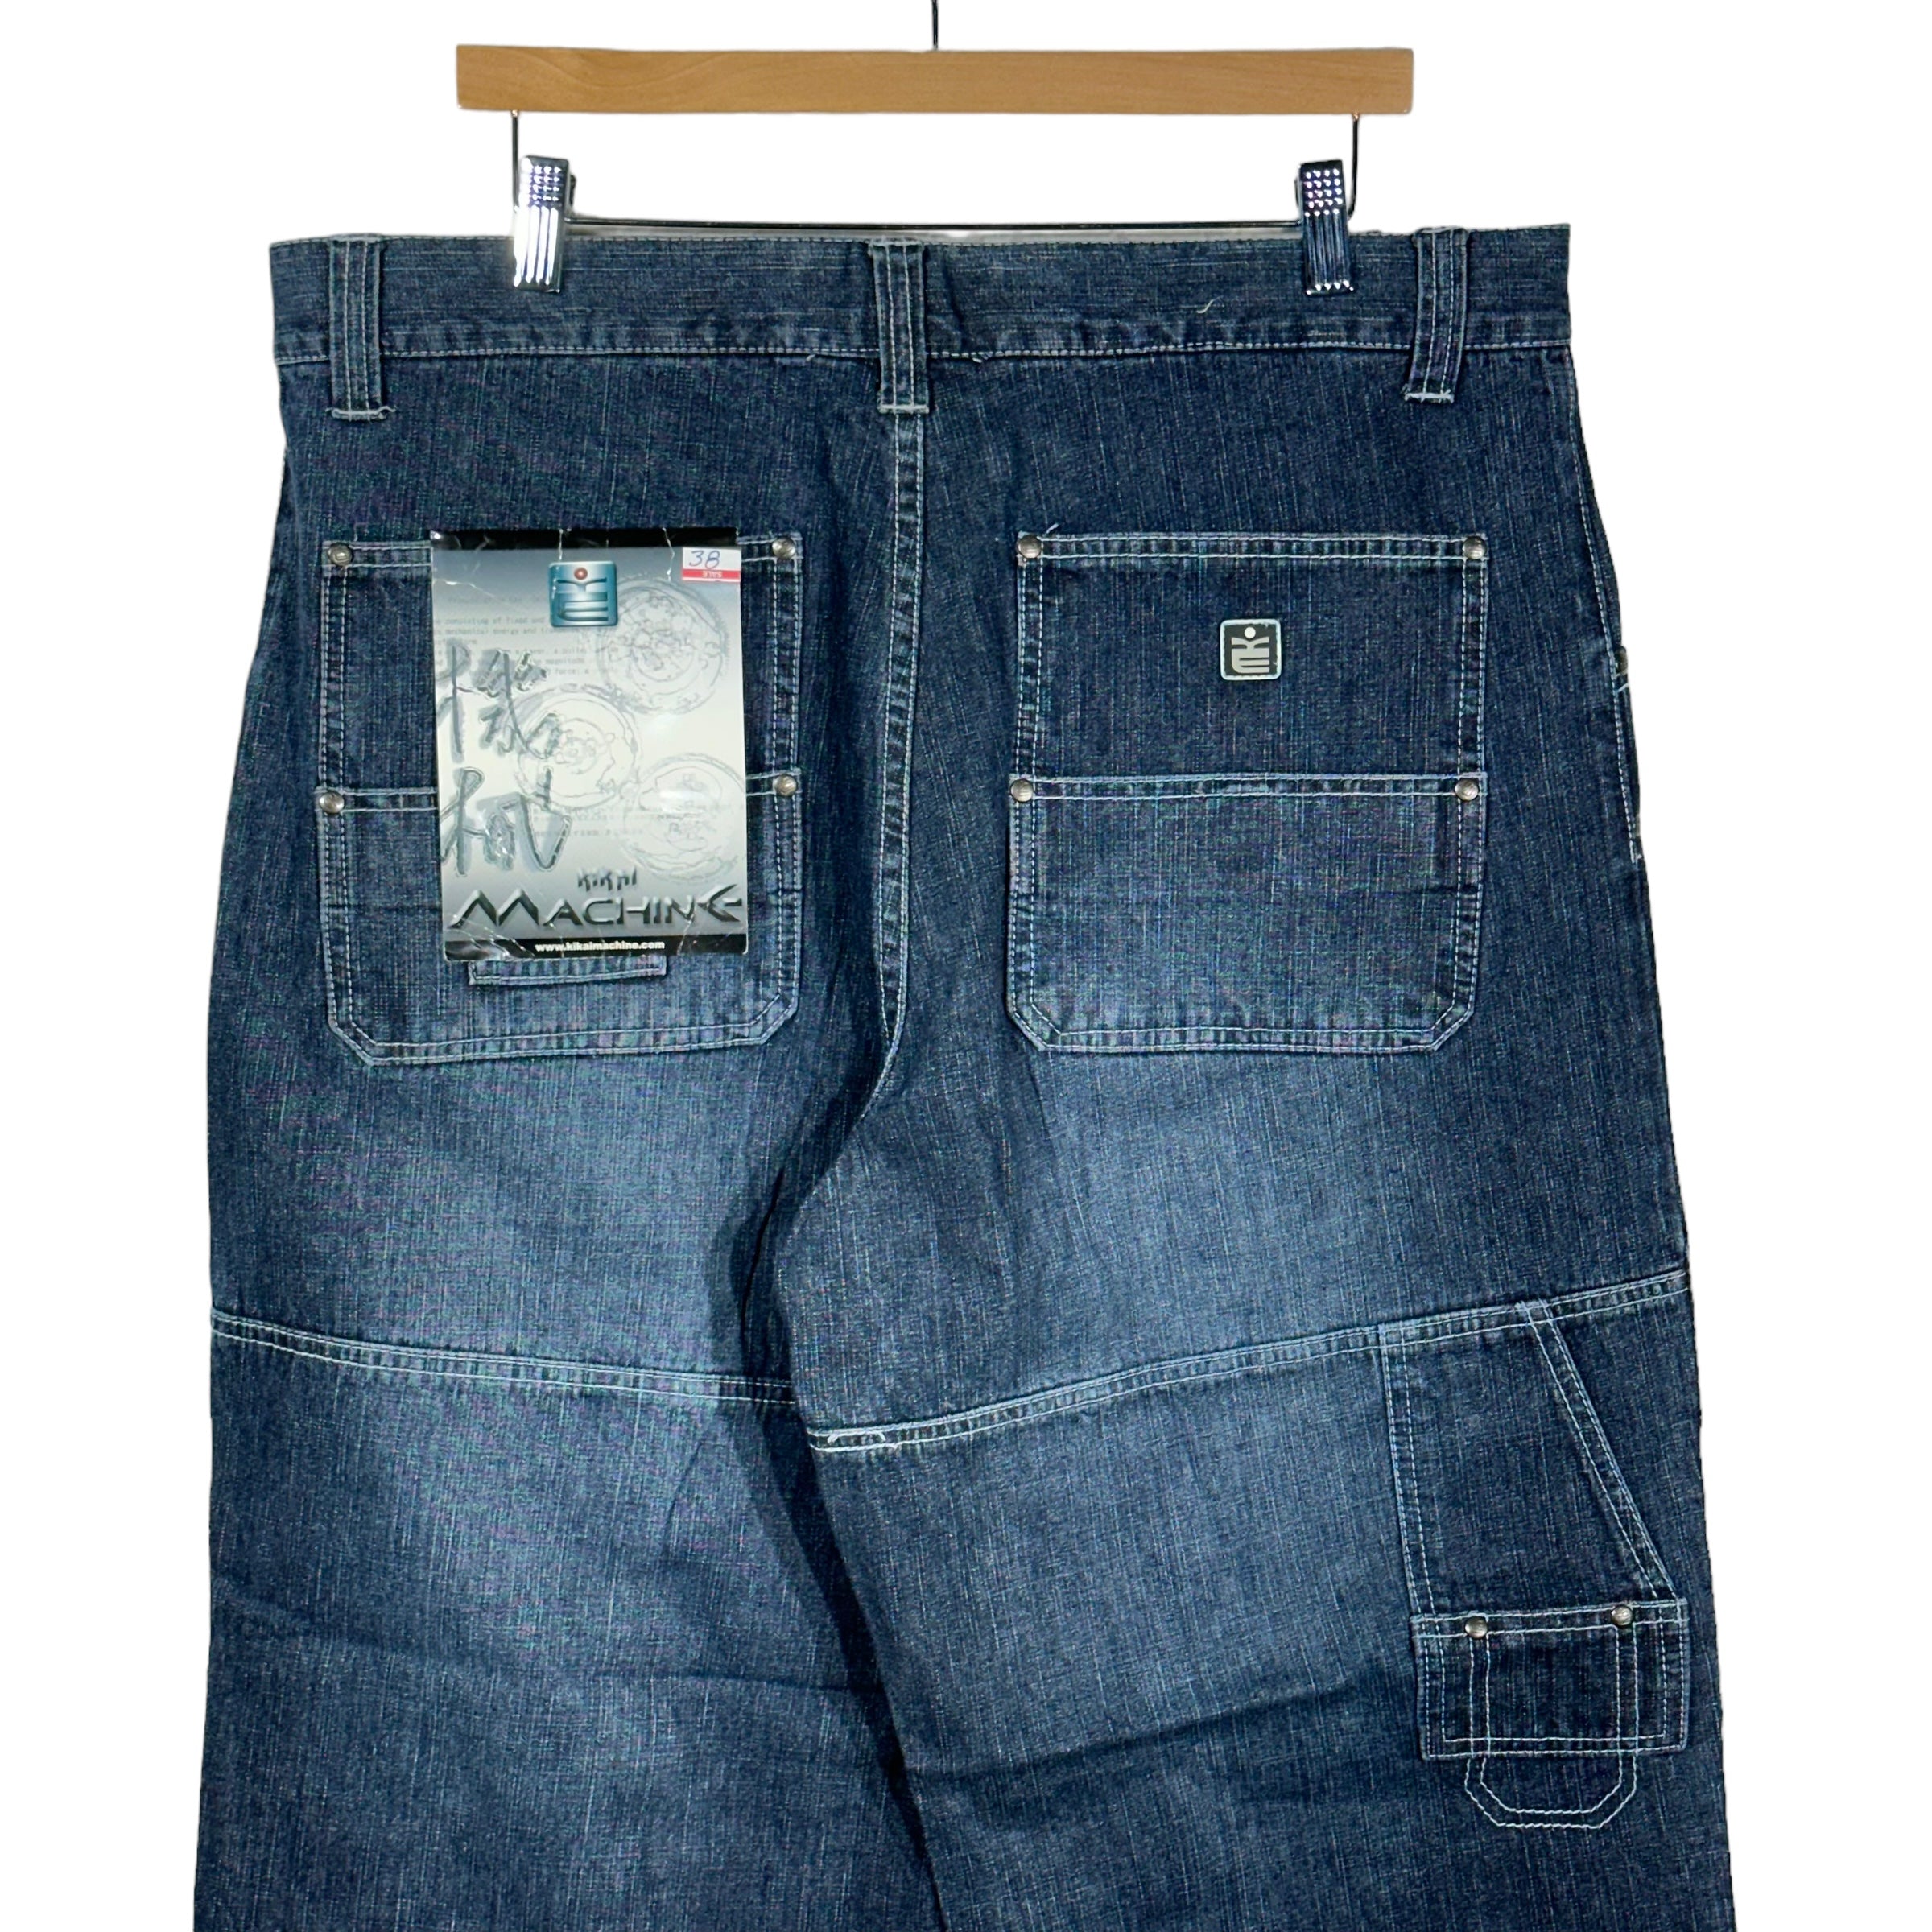 Vintage NWT Kikai Machine Jeans